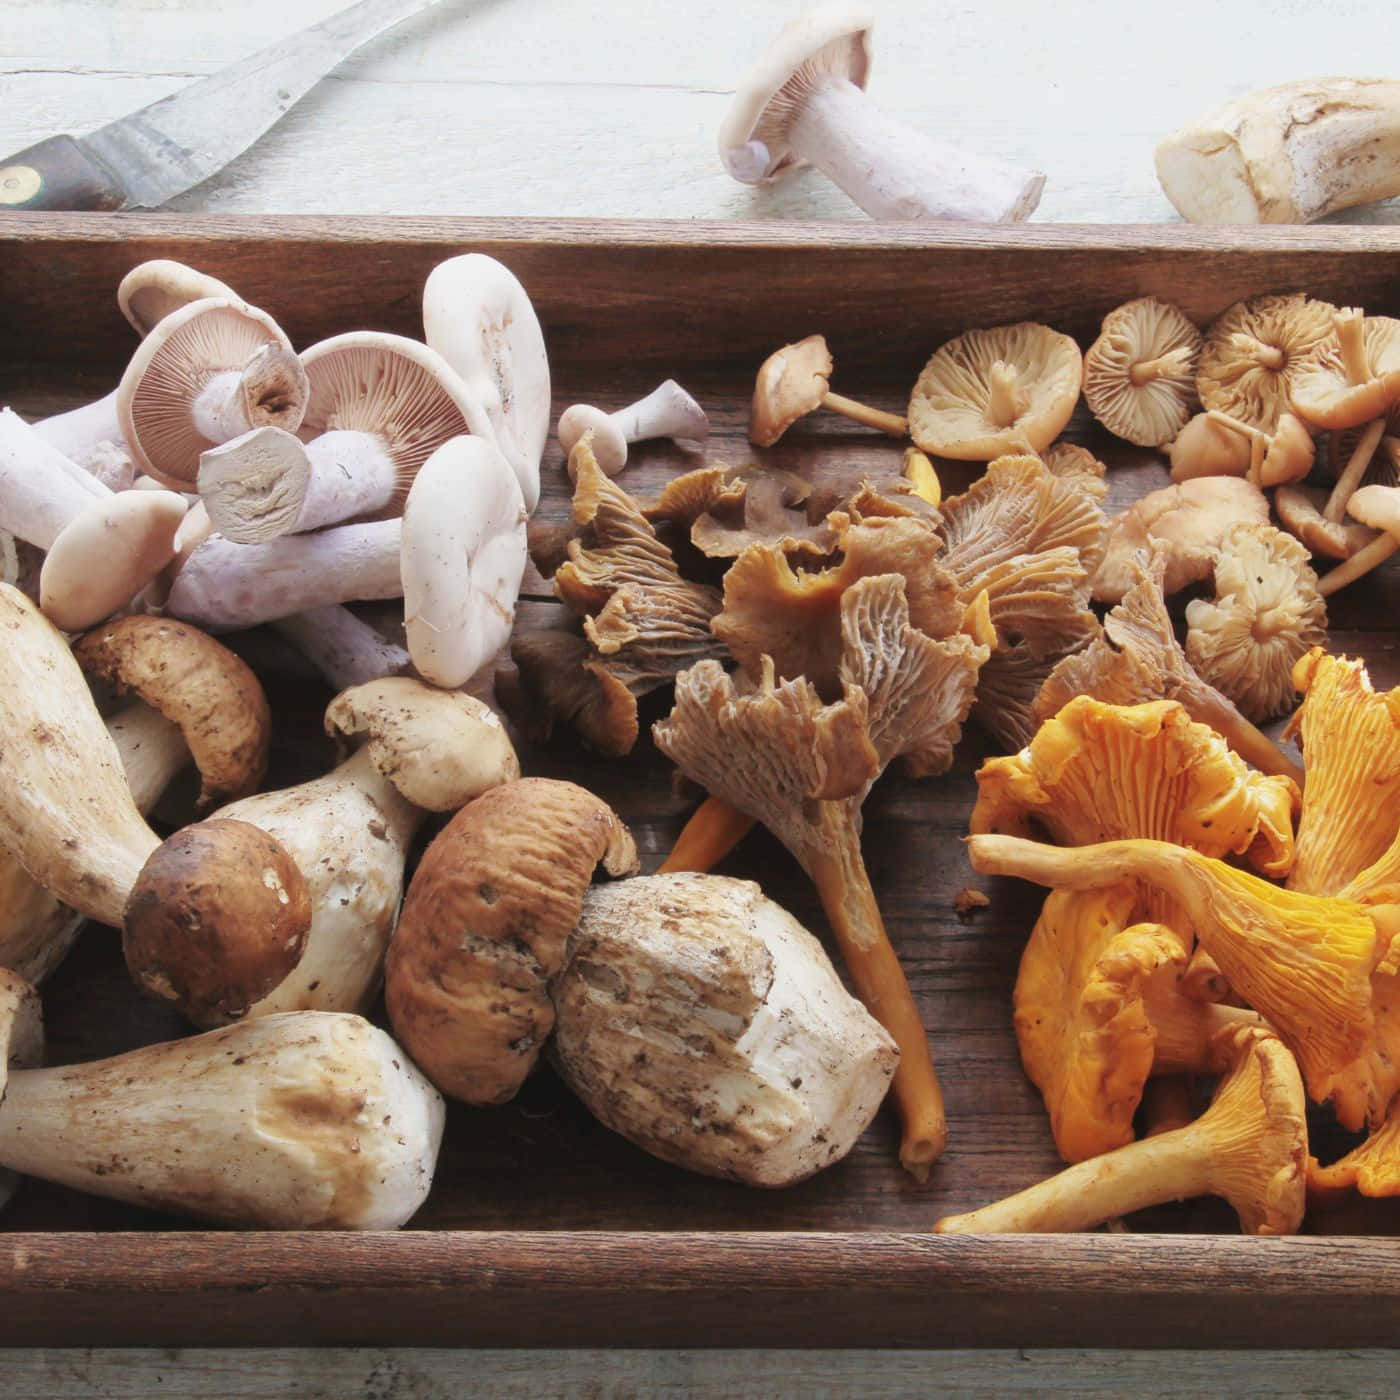 Diverse Varieties of Mushrooms Showcased